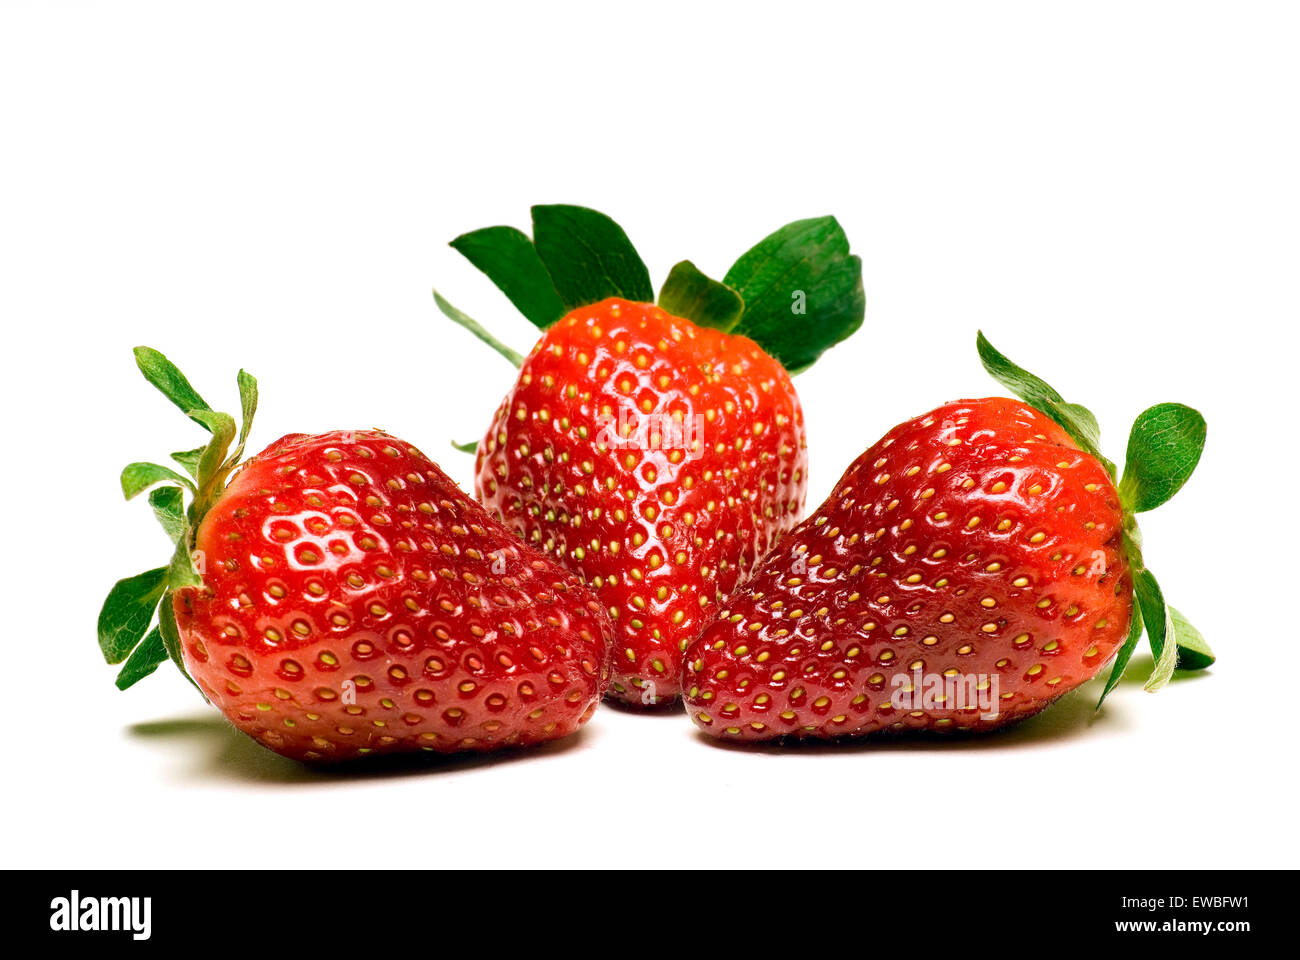 Frischen und saftige Erdbeeren bereit, Makro Essen am weißen Backgrond erschossen Stockfoto